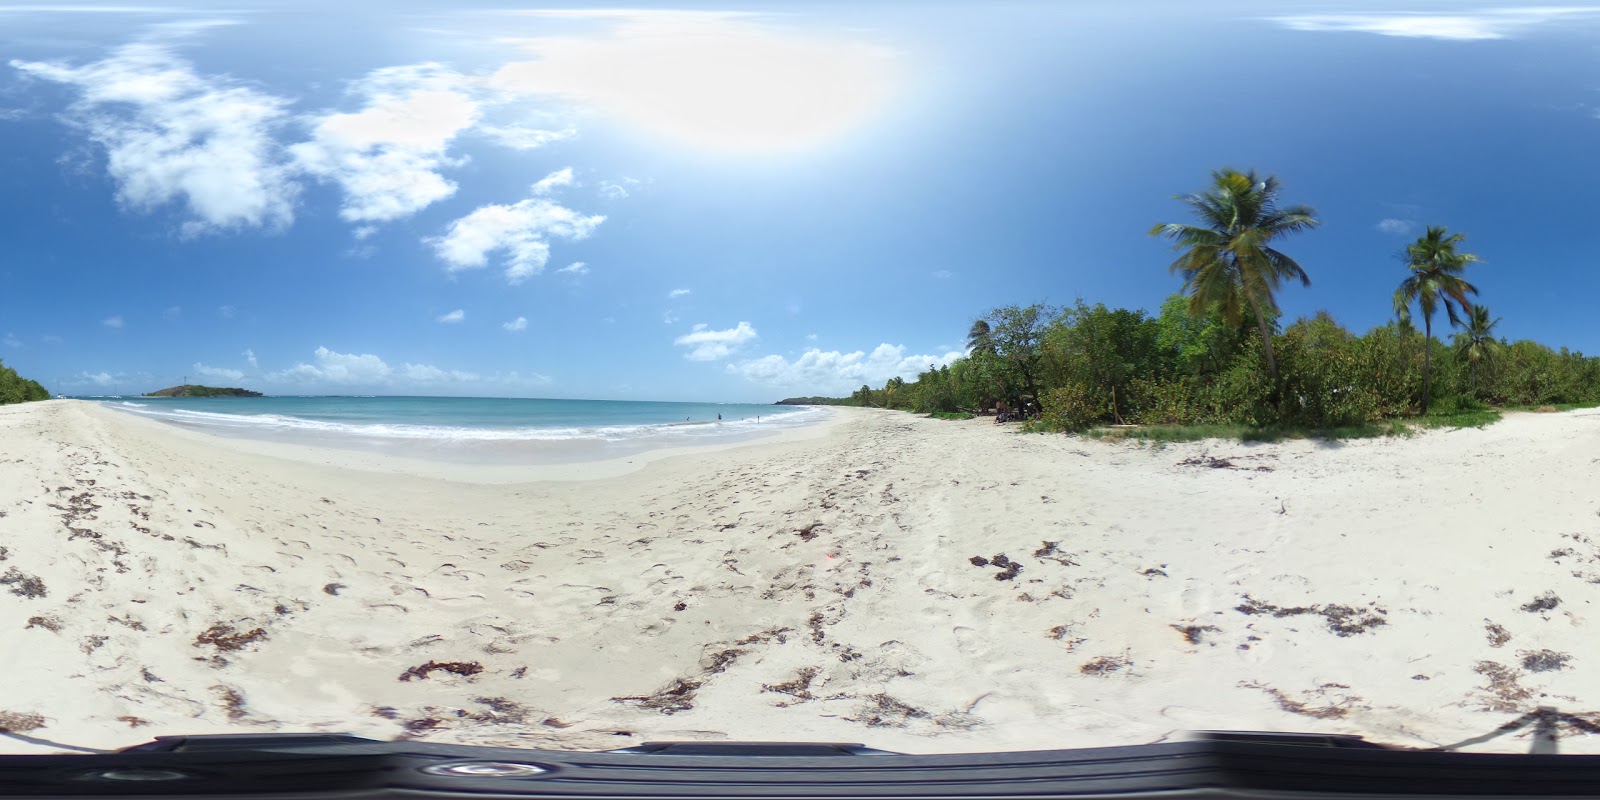 Foto af Grande terre beach - populært sted blandt afslapningskendere